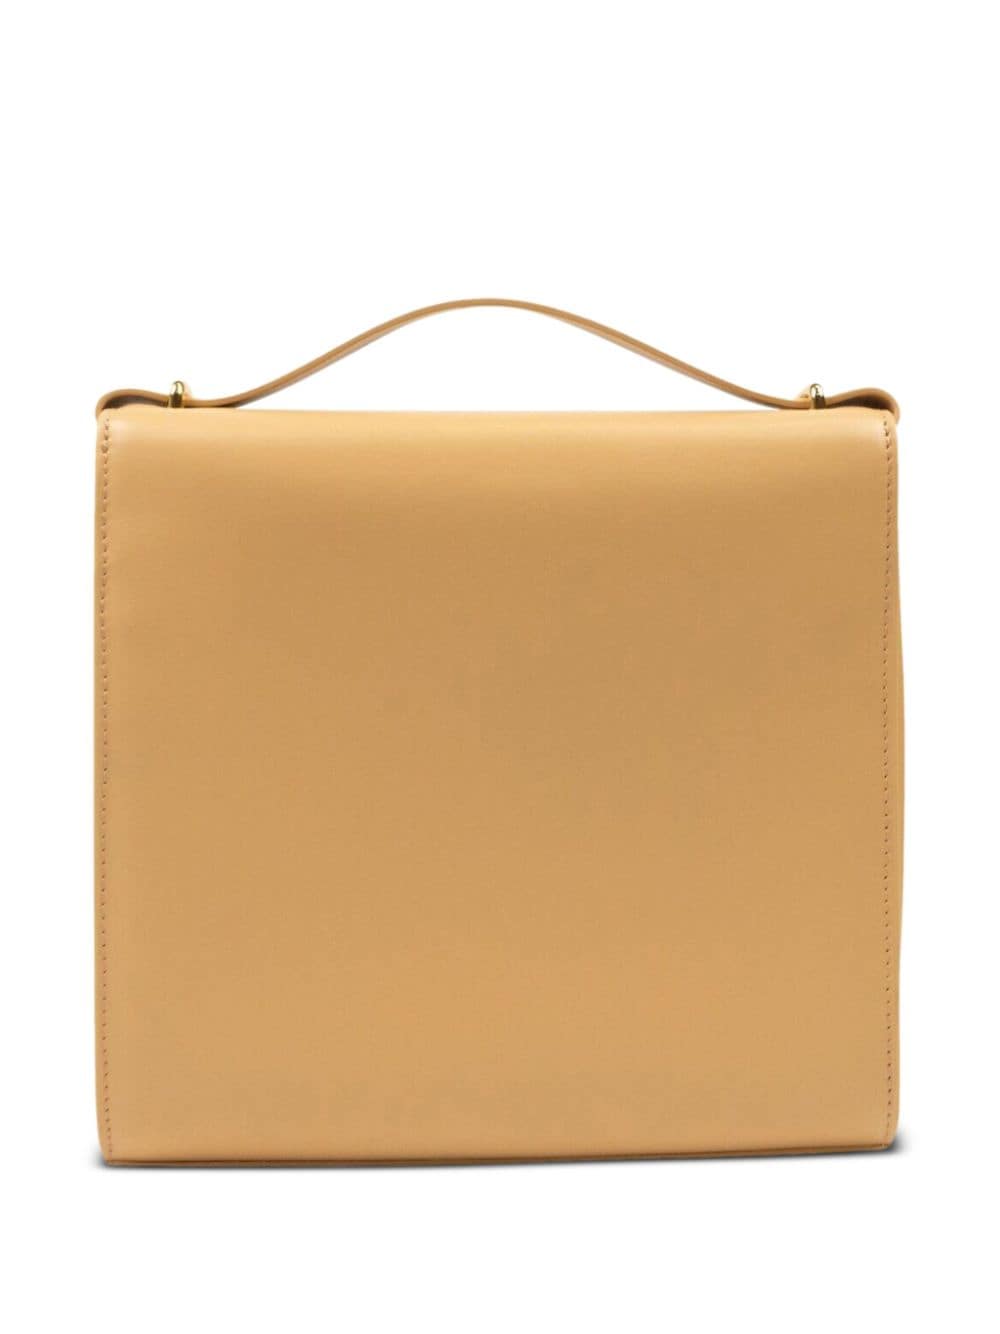 Bottega Veneta The Clip leather shoulder bag - Beige